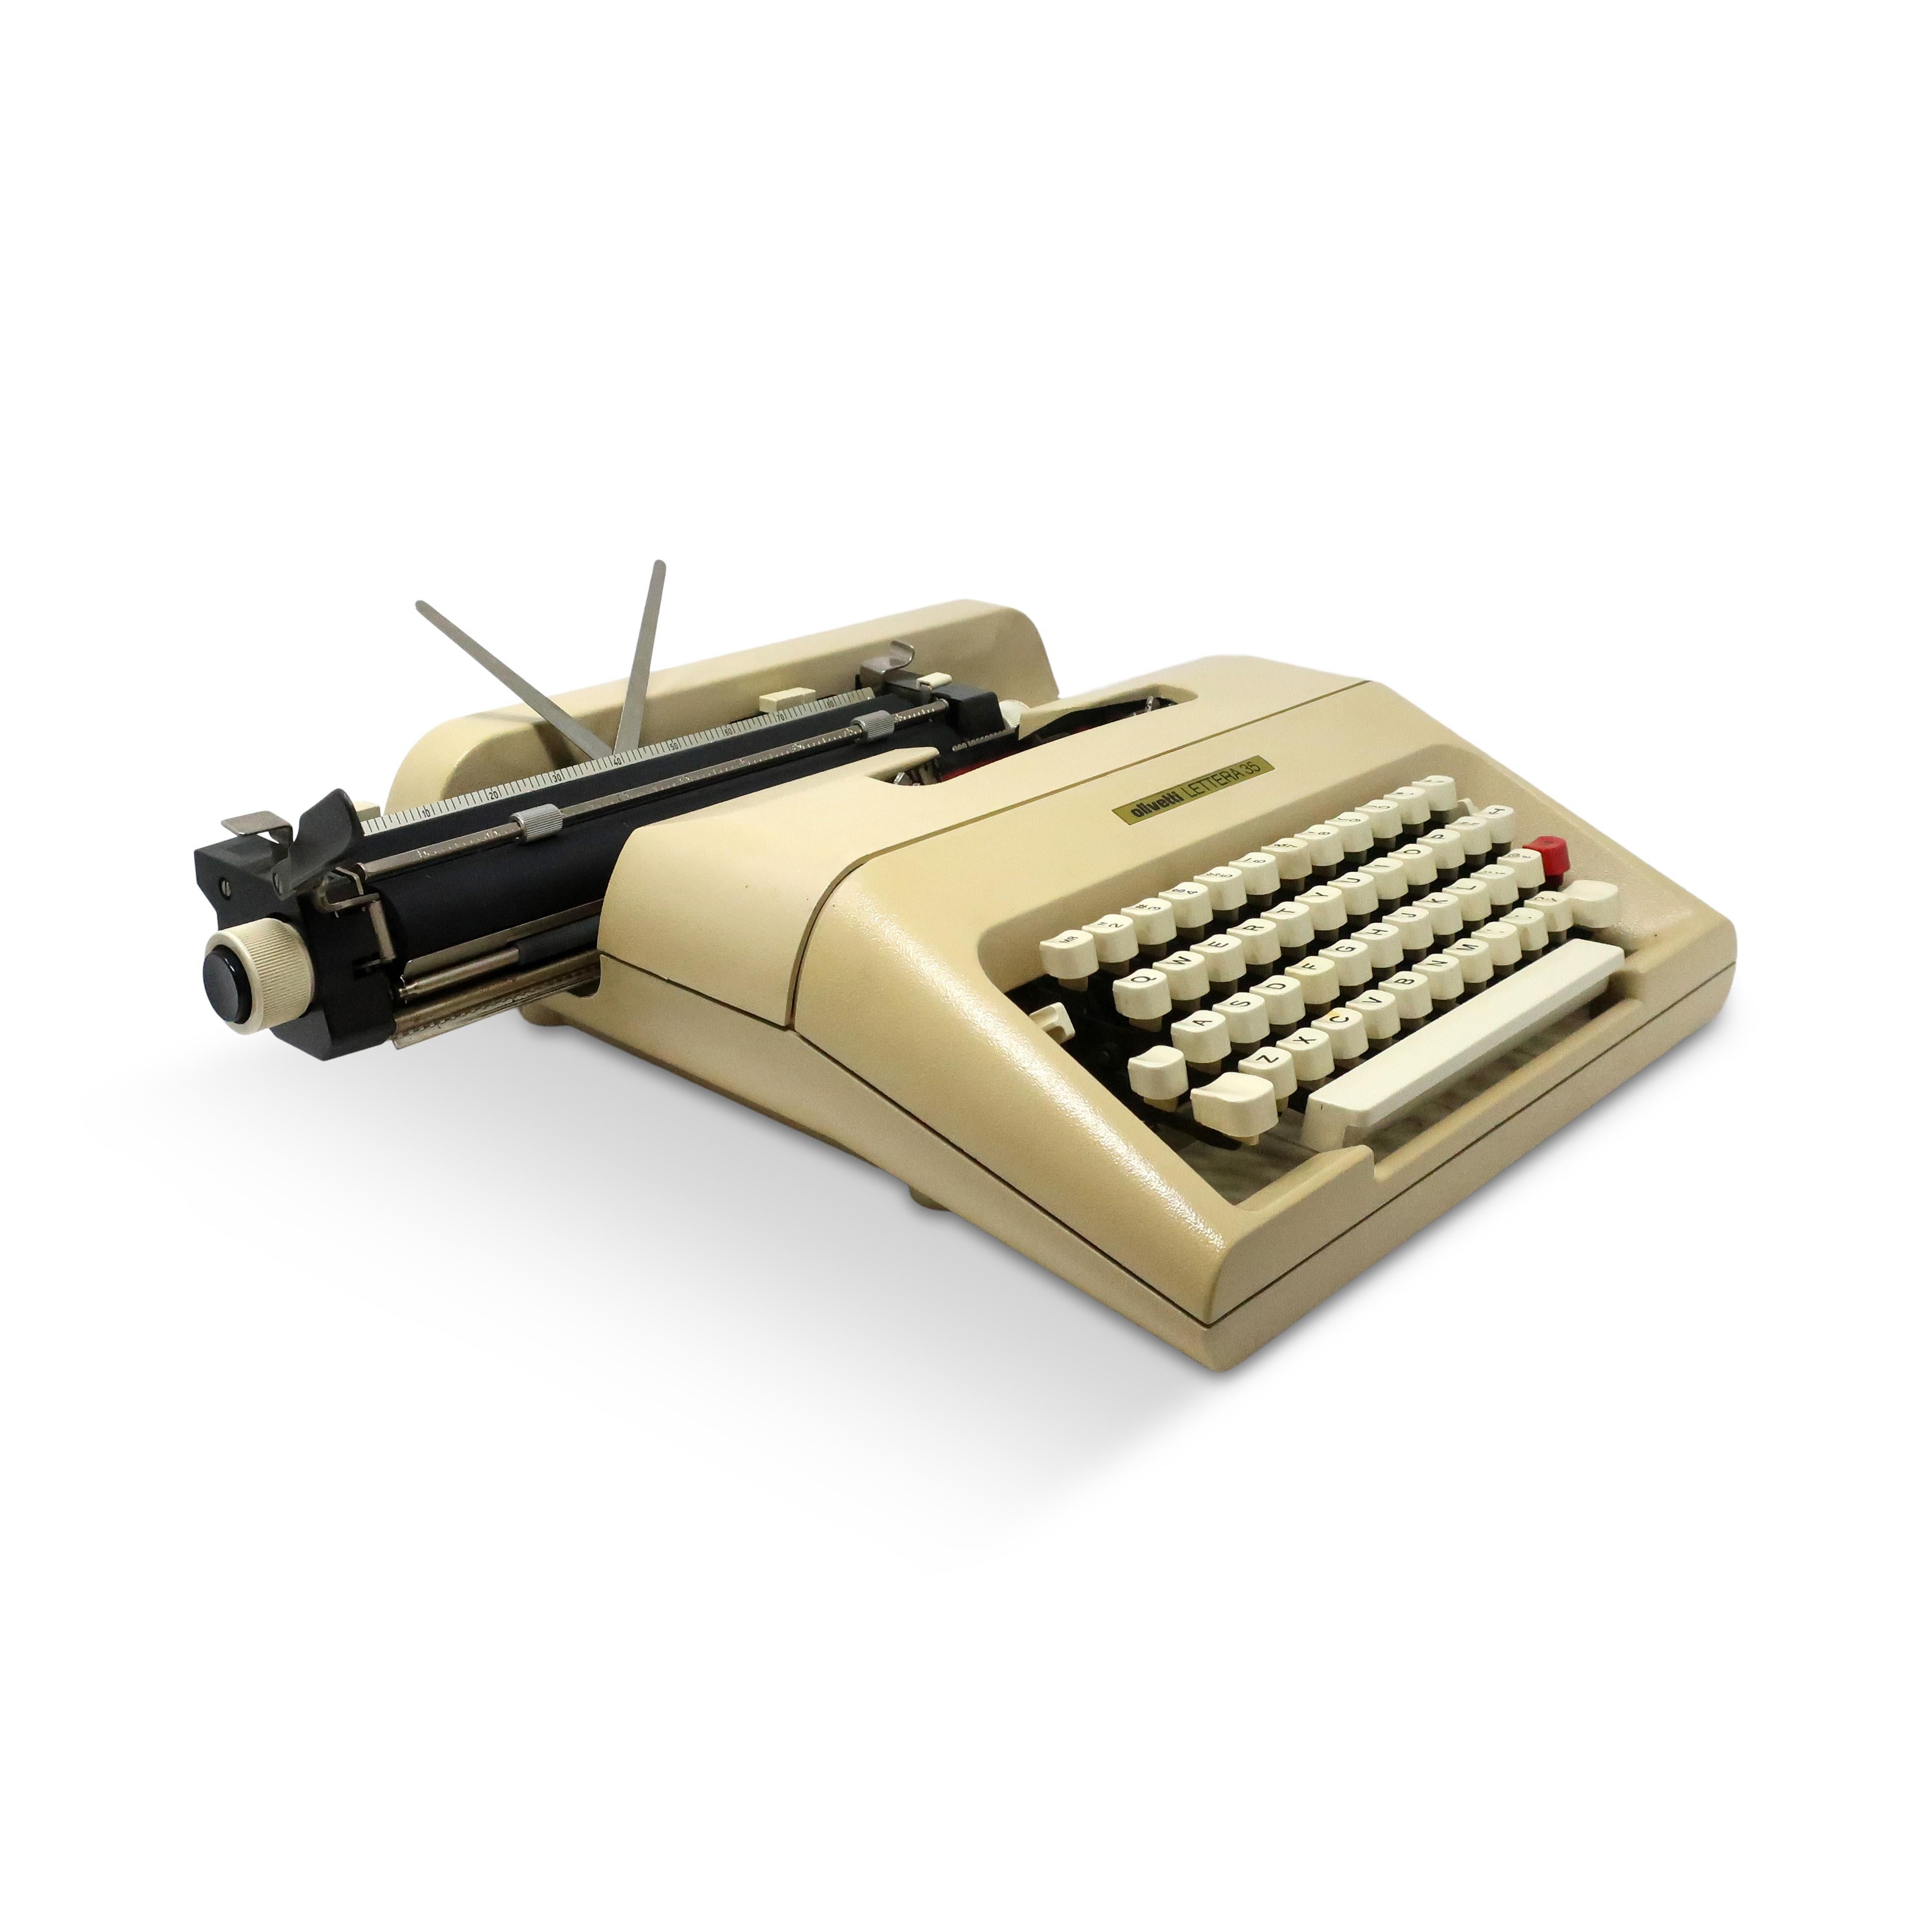 1970s typewriter